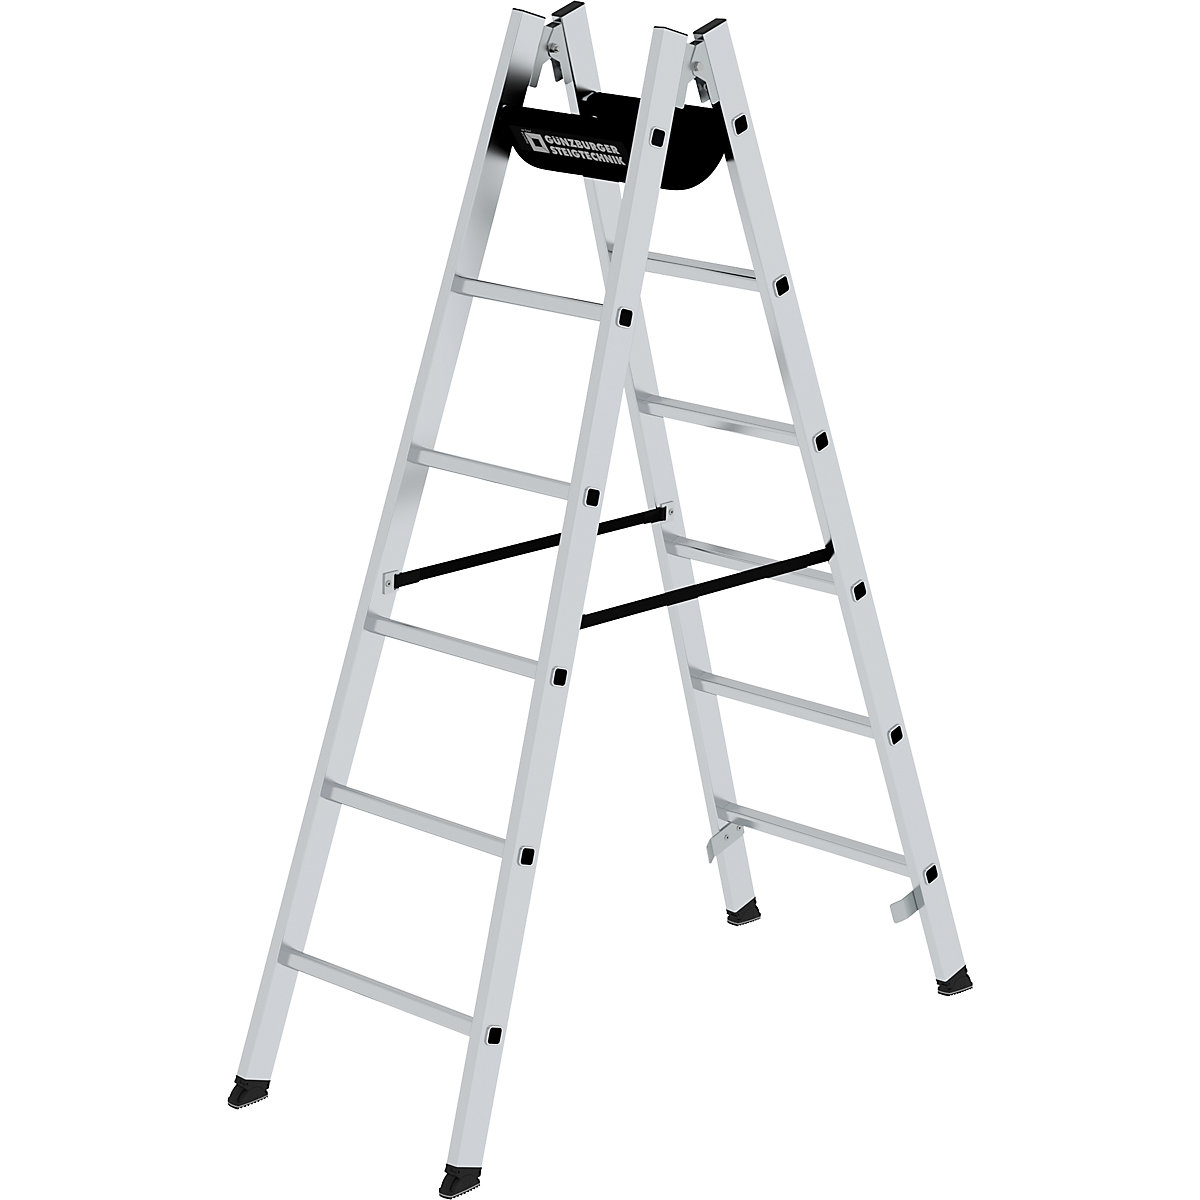 Bezpečnostný rebrík s priečkami, pochôdzny z oboch strán – MUNK